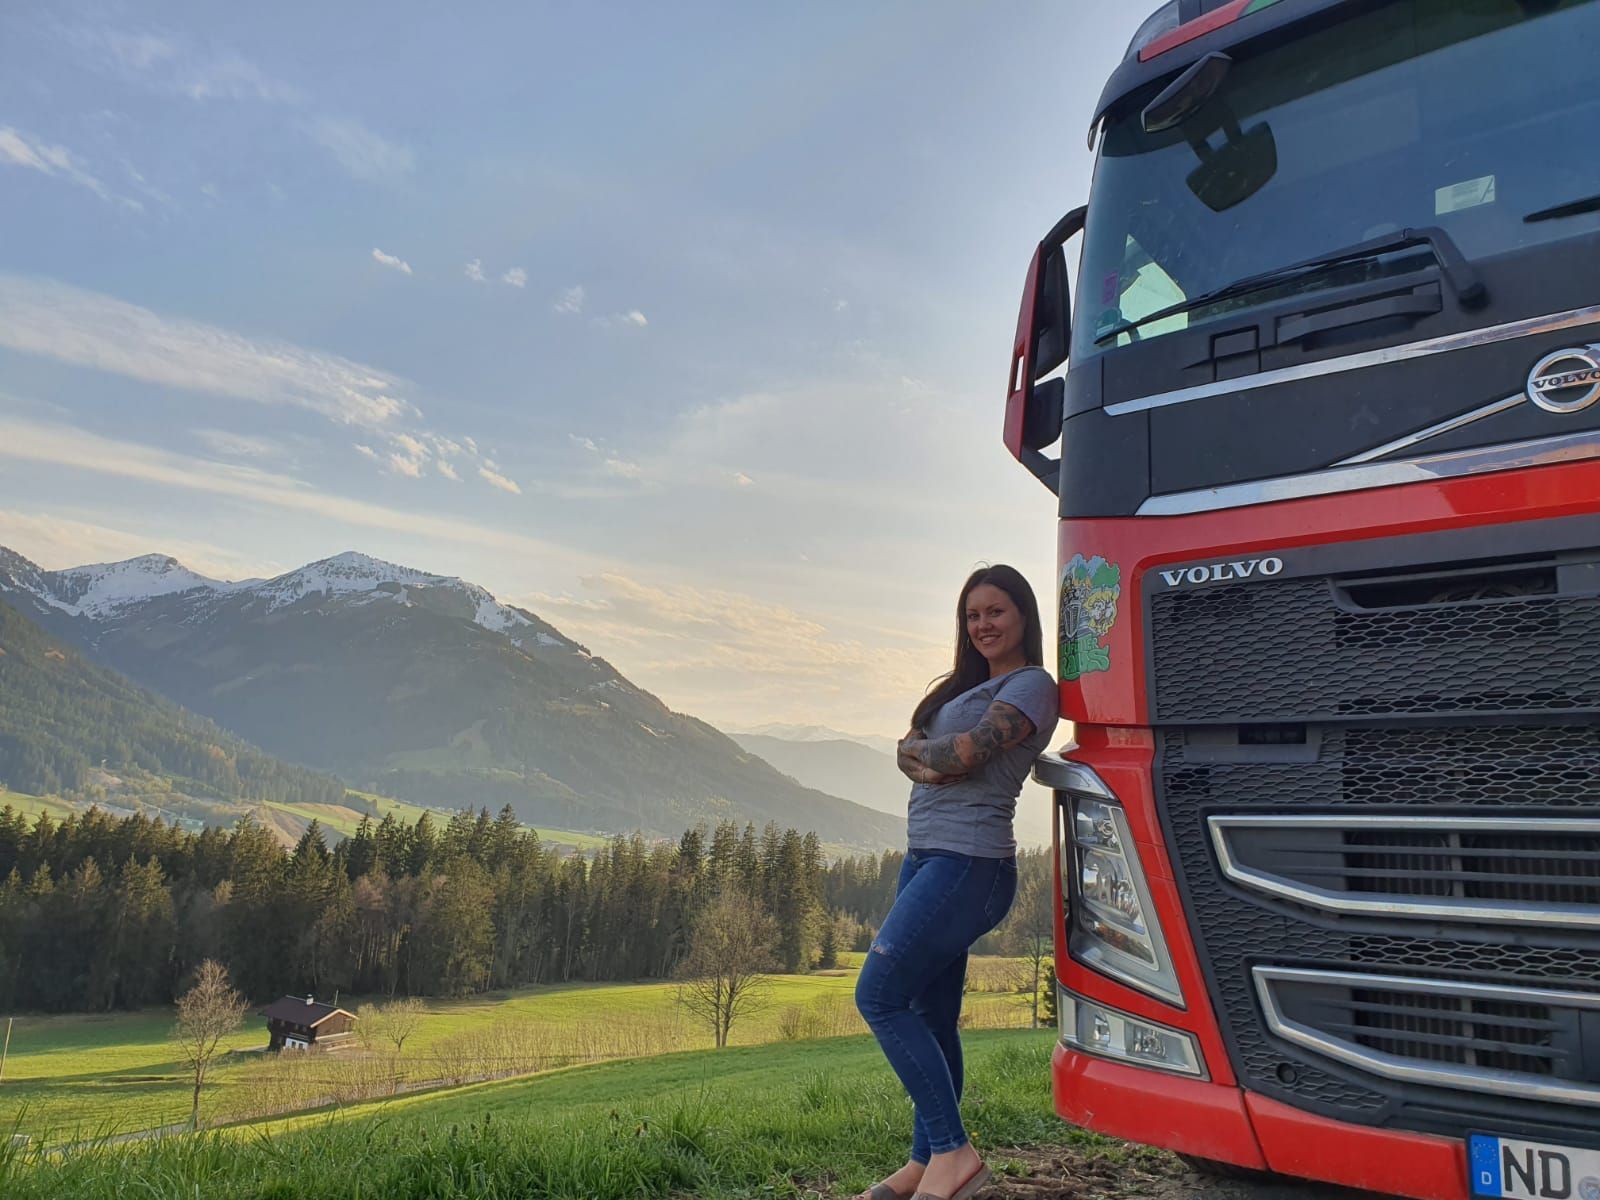 "Trucker Babe" Gina vor malerischer Bergkulisse mit ihrem roten Volvo 460.